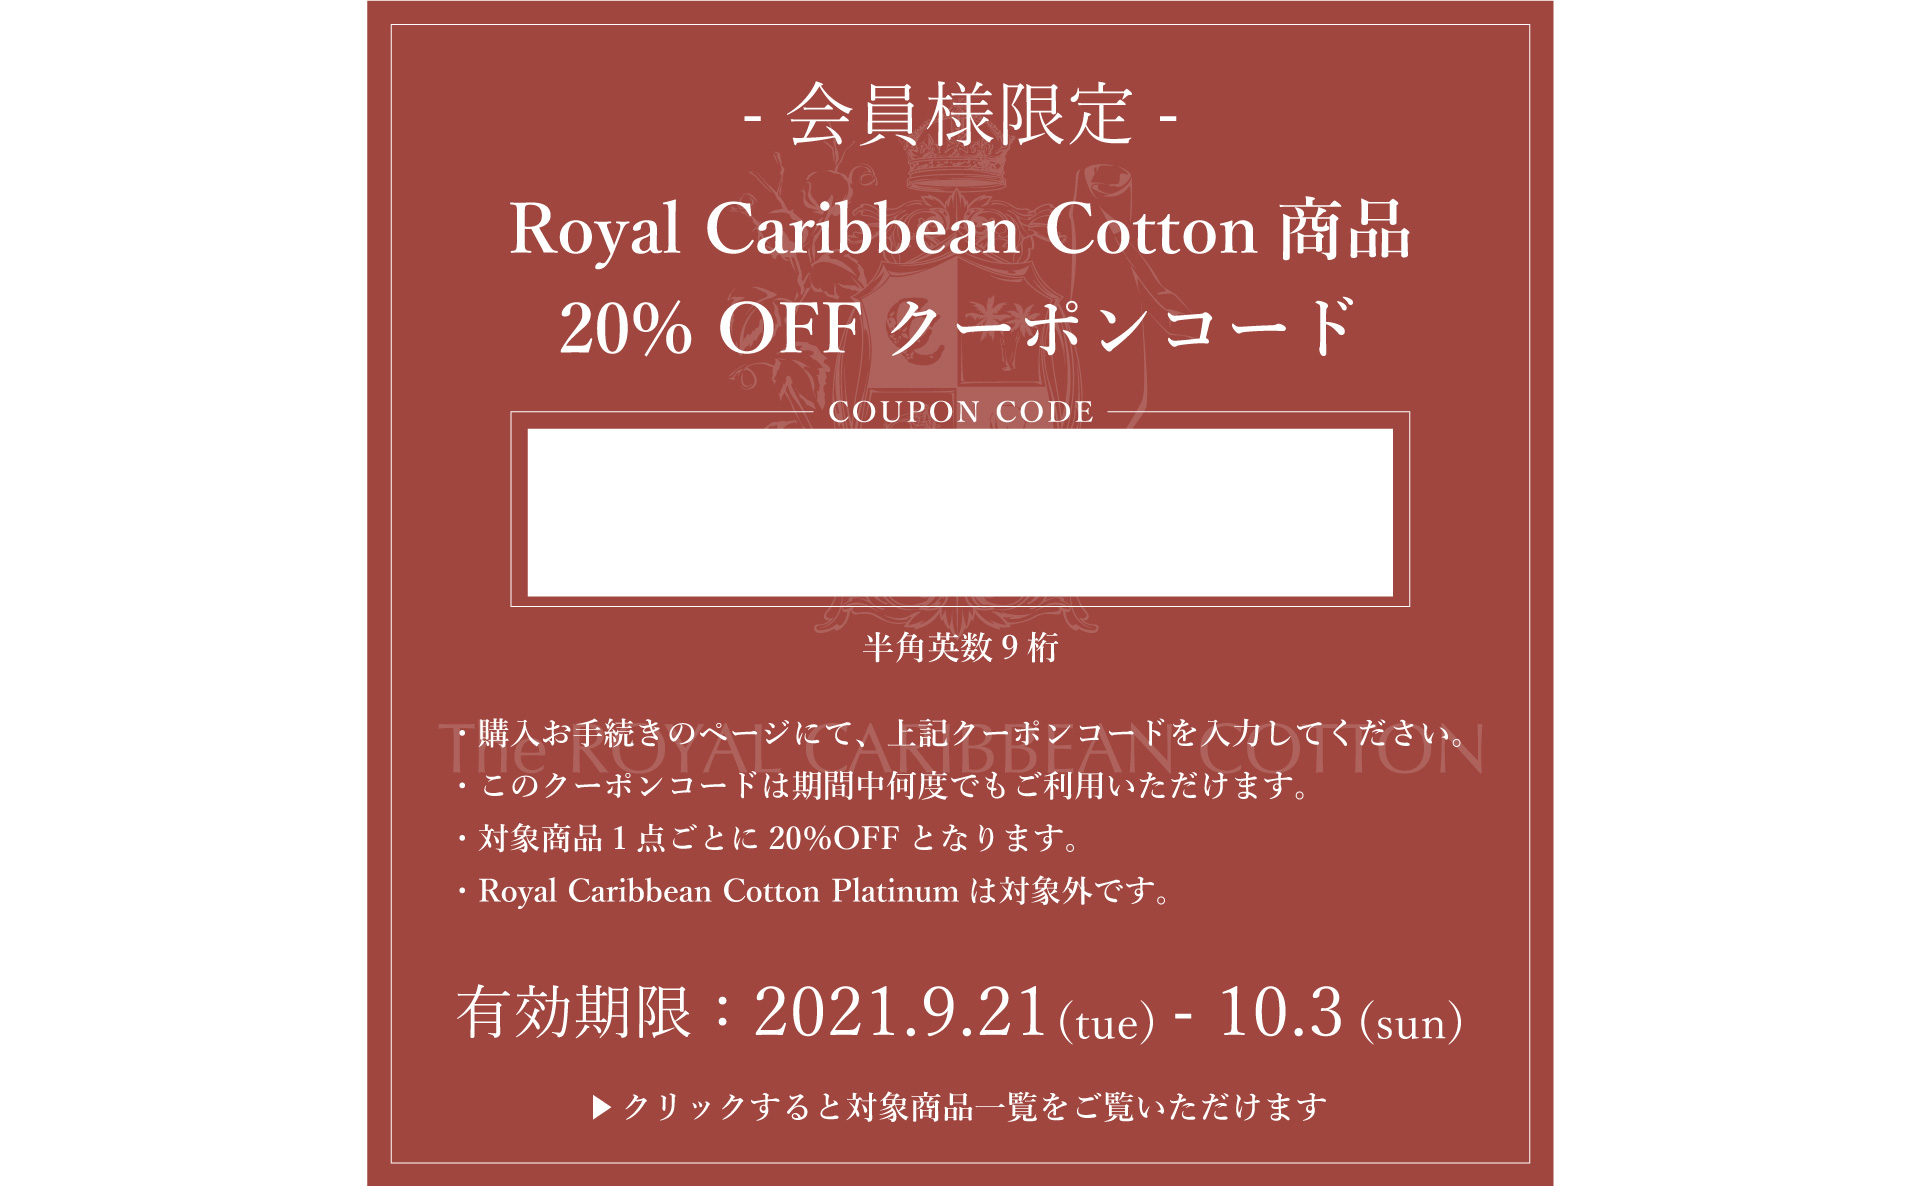 会員様限定Royal Caribbean Cotton商品20%OFFクーポン配布